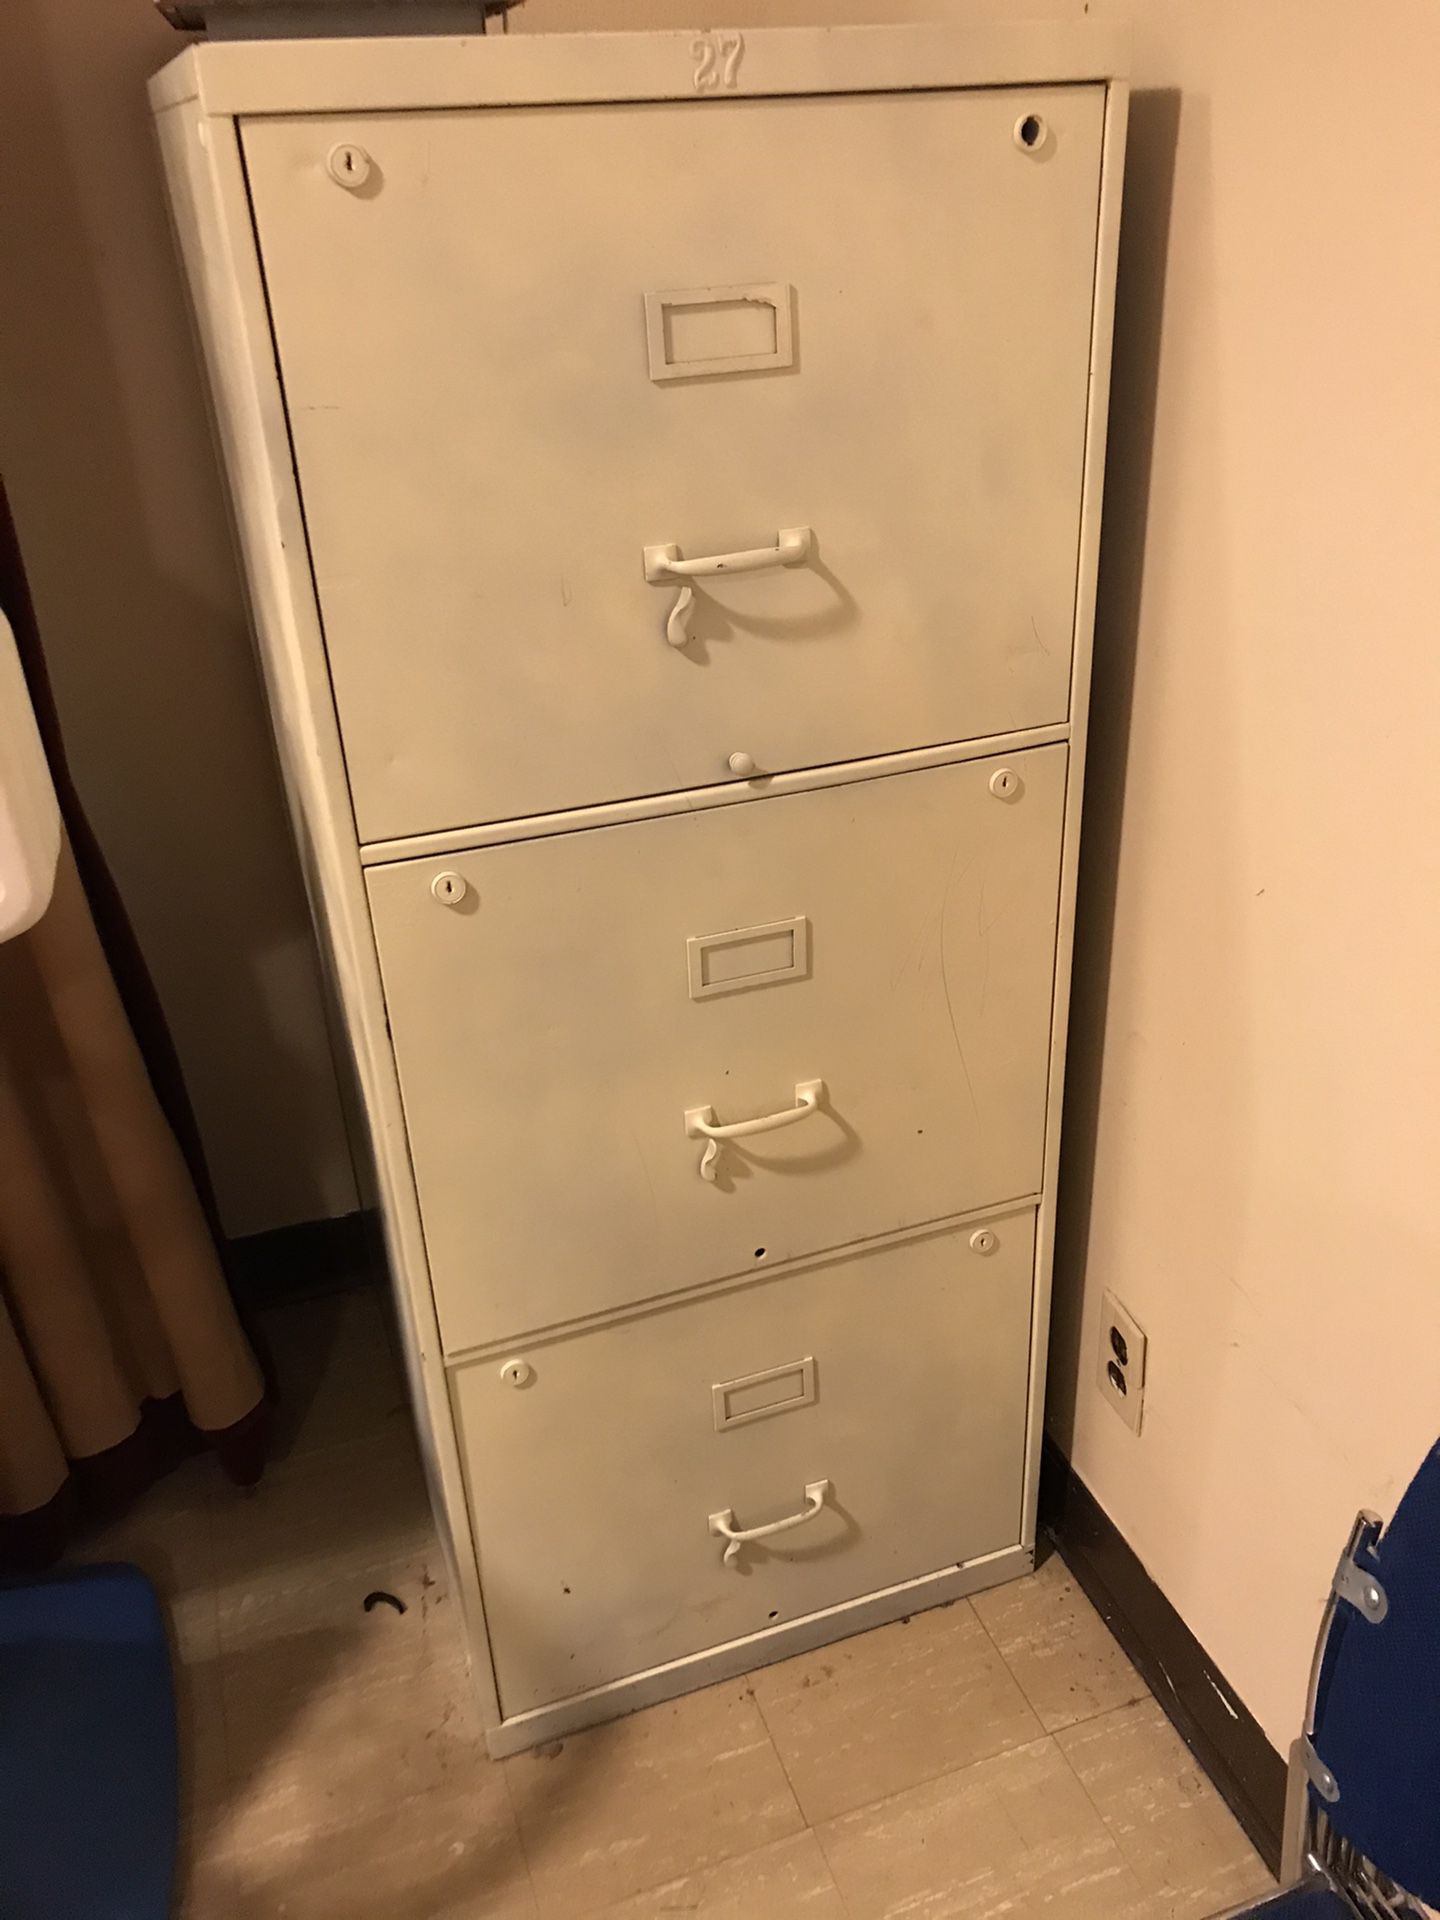 Vintage metal file cabinet